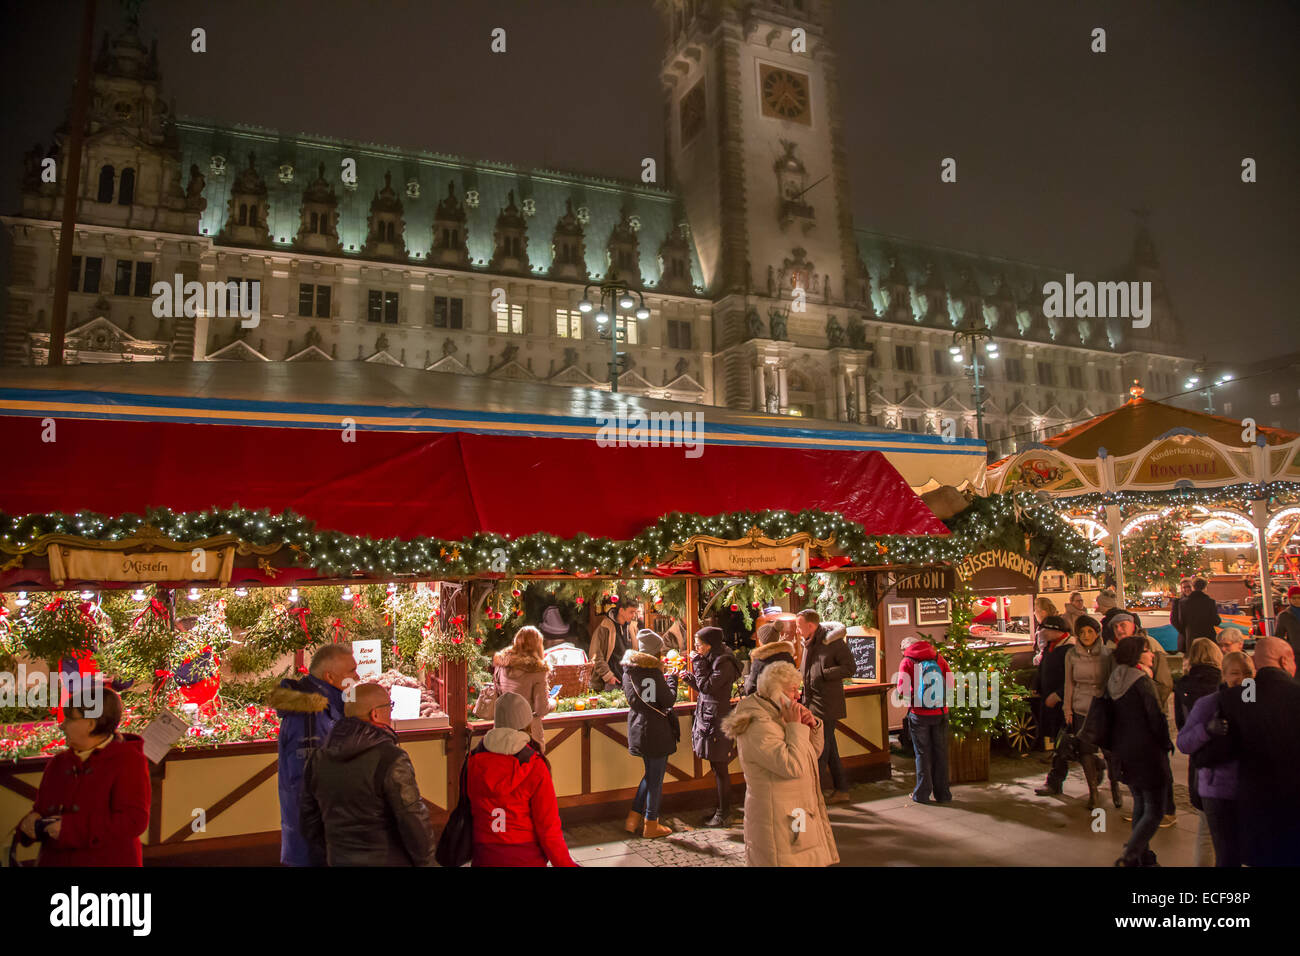 Marché de Noël allemand à Hambourg, en face de l'hôtel de ville Rathaus Banque D'Images